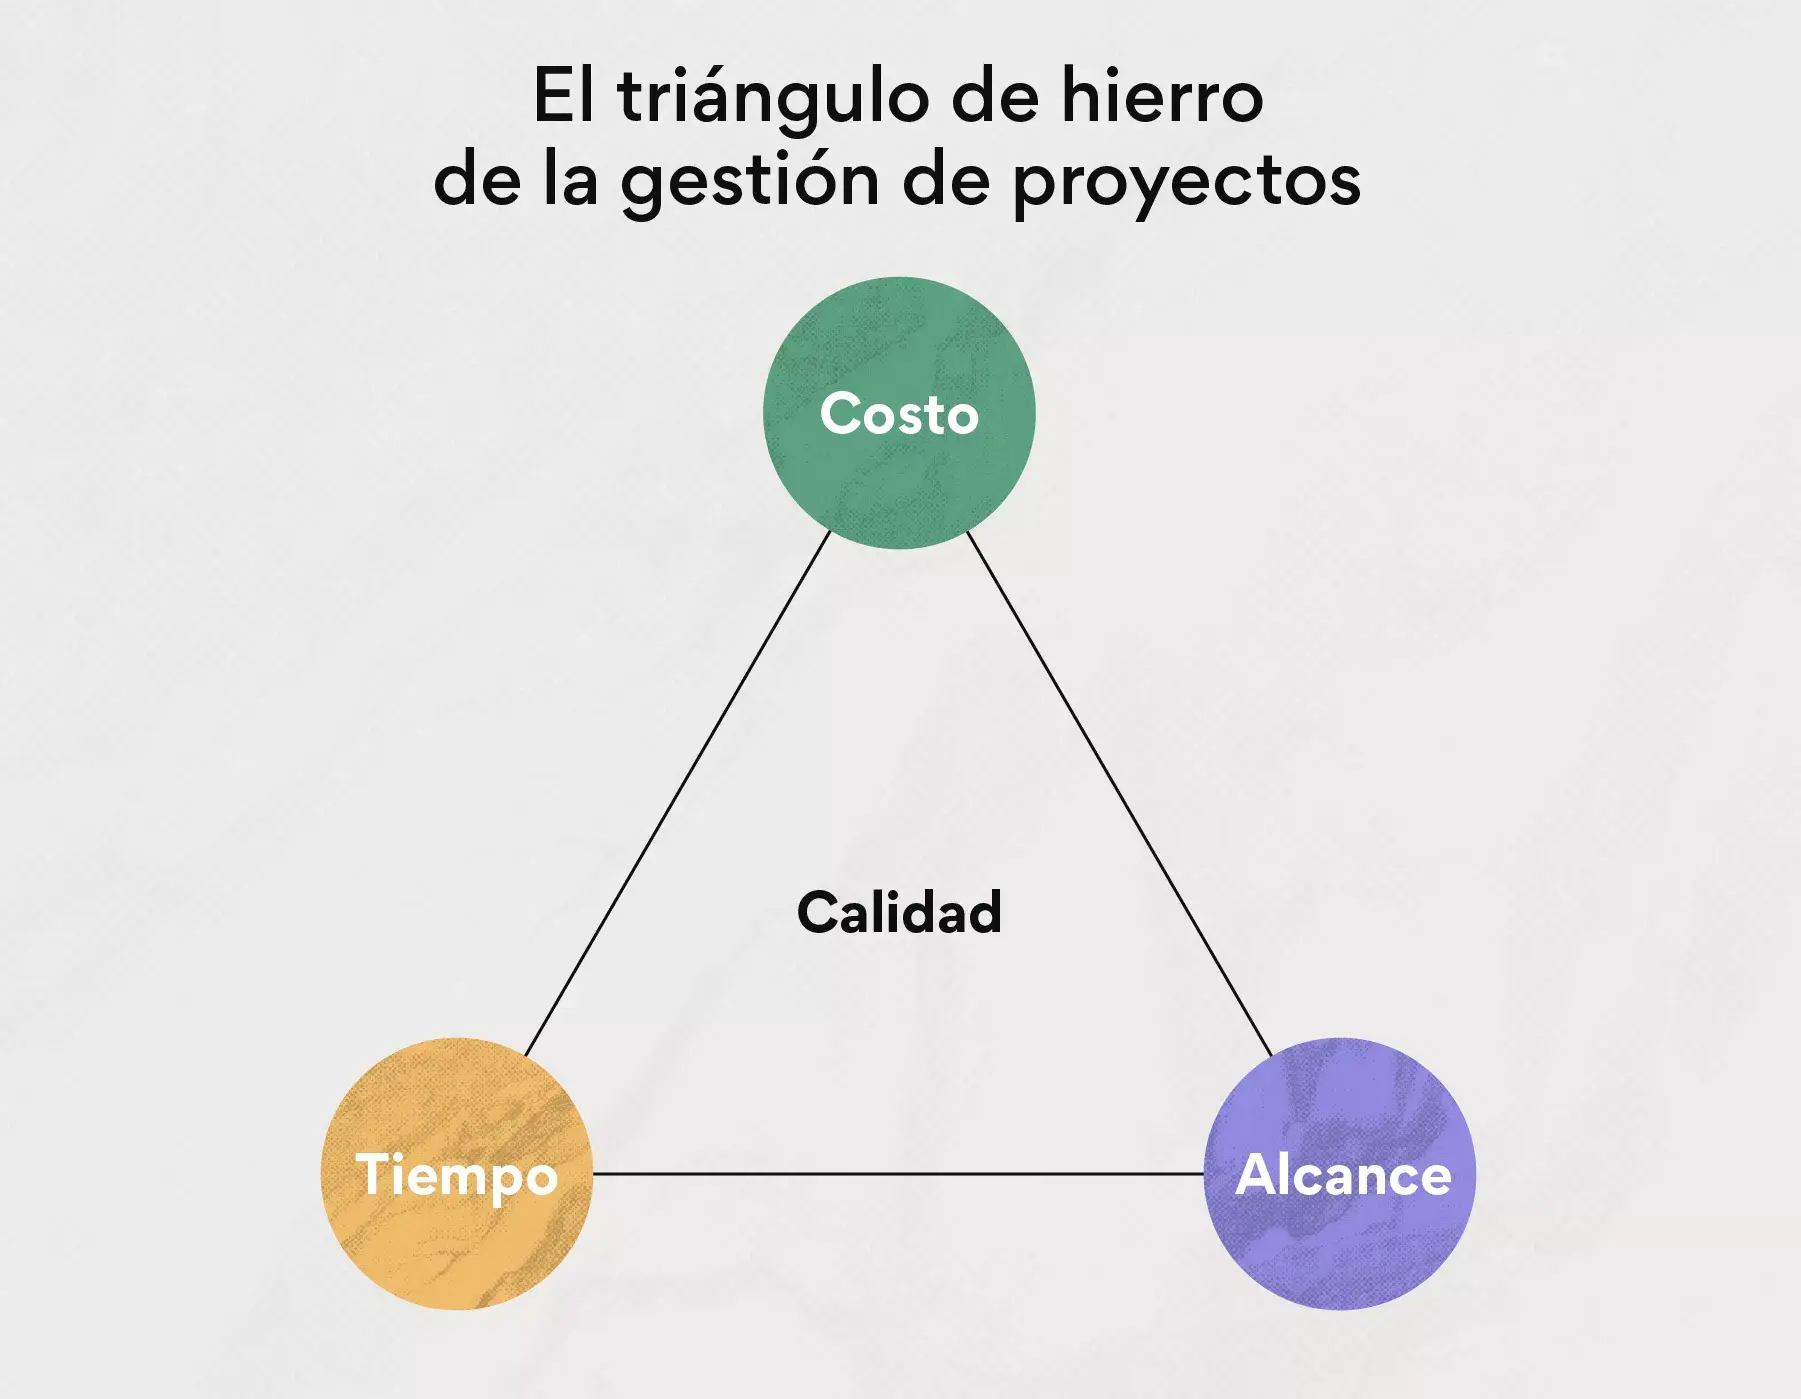 El triángulo de hierro de la gestión de proyectos